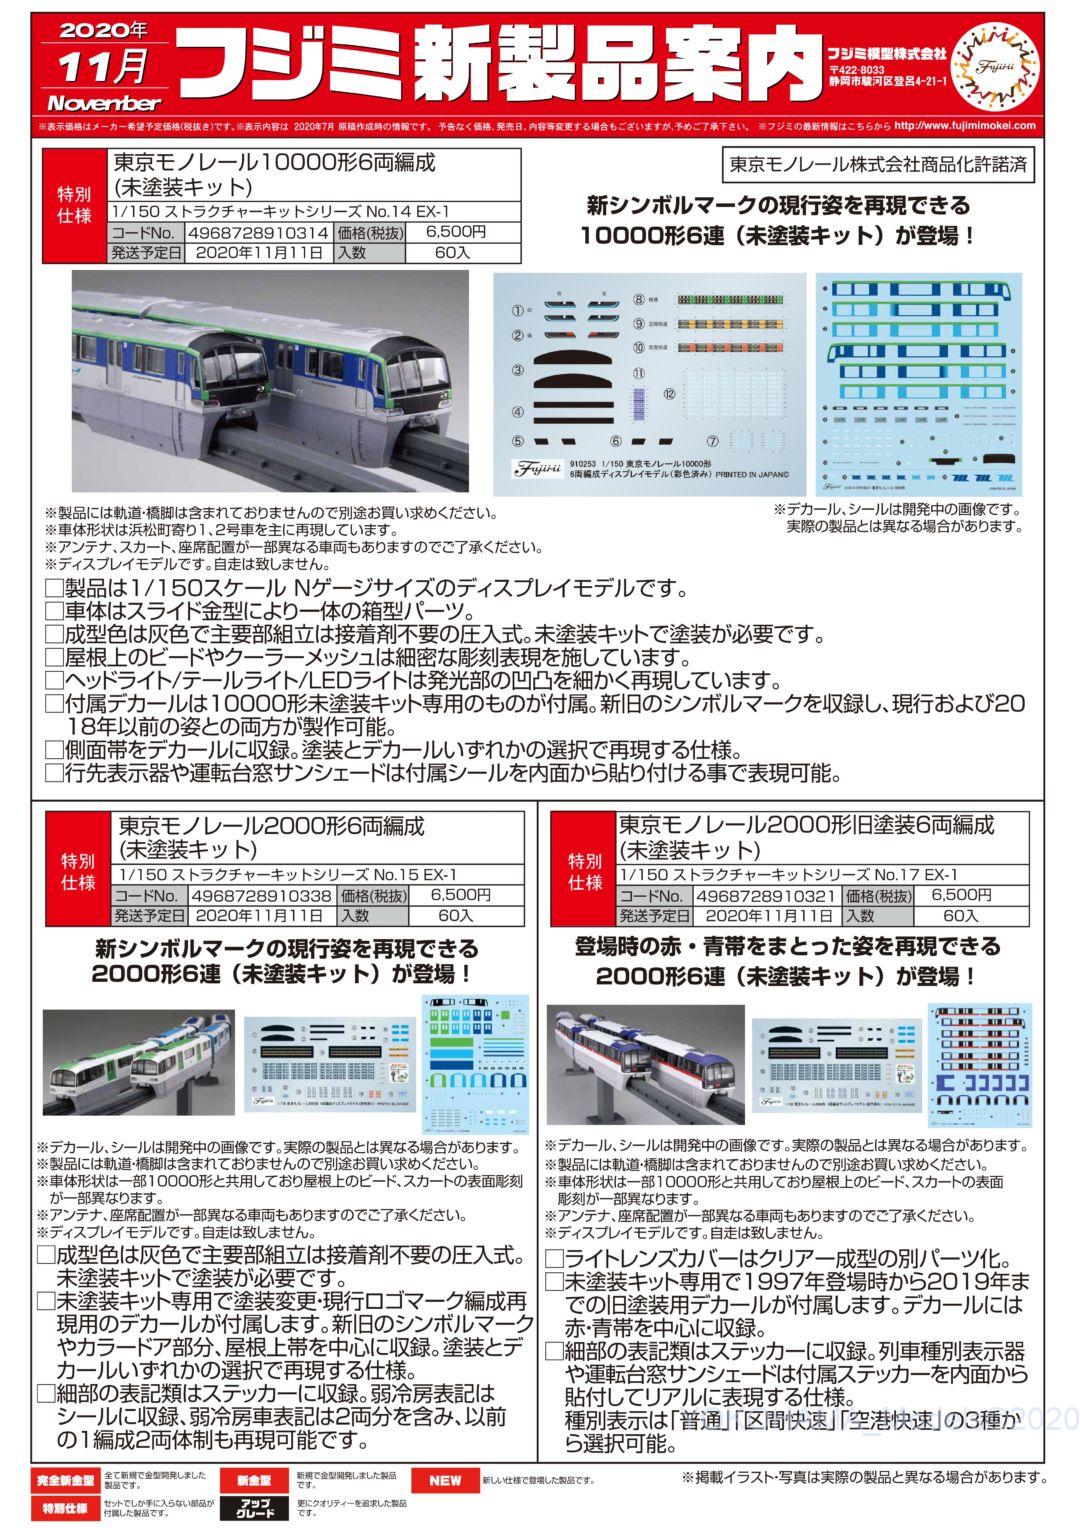 FUJIMI】 新製品情報 2020年11月 #フジミ ☆彡 横浜模型 #鉄道模型 #N ...